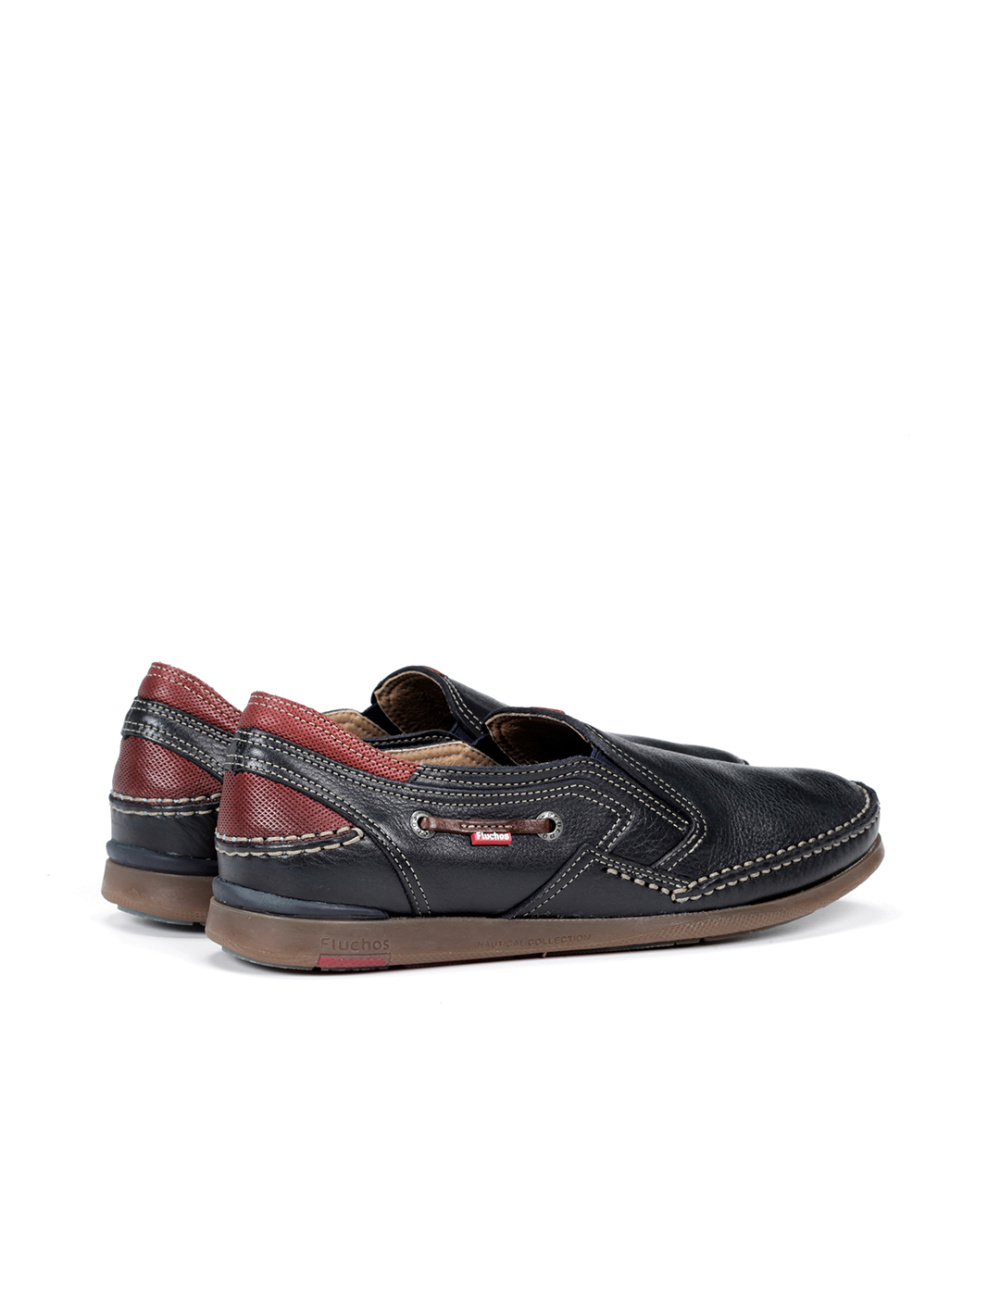 Fluchos - Zapato casual de hombre 9883